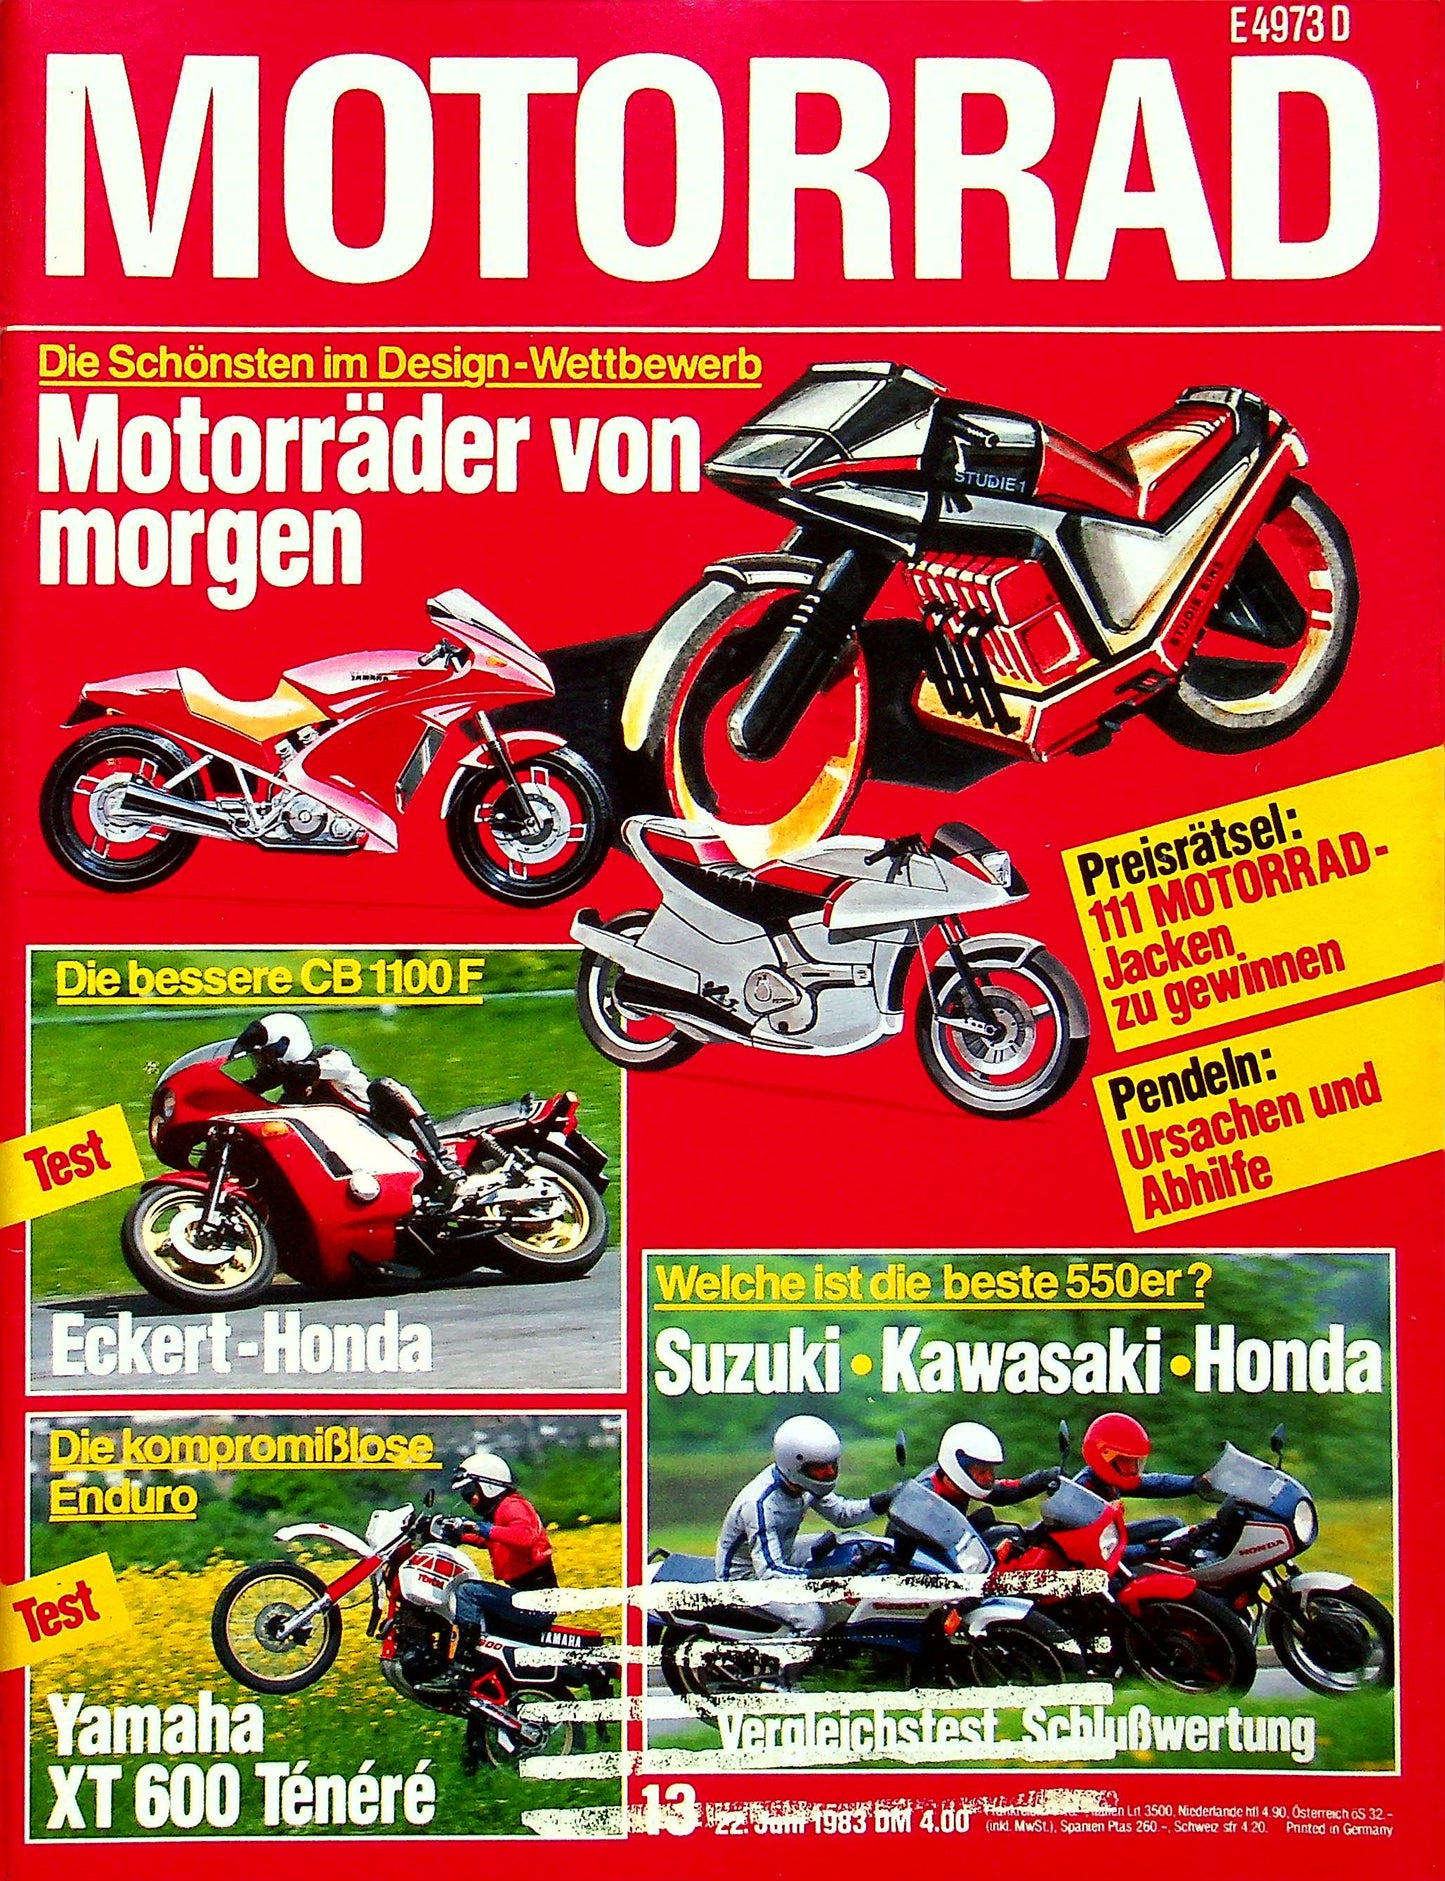 Motorrad 13/1983